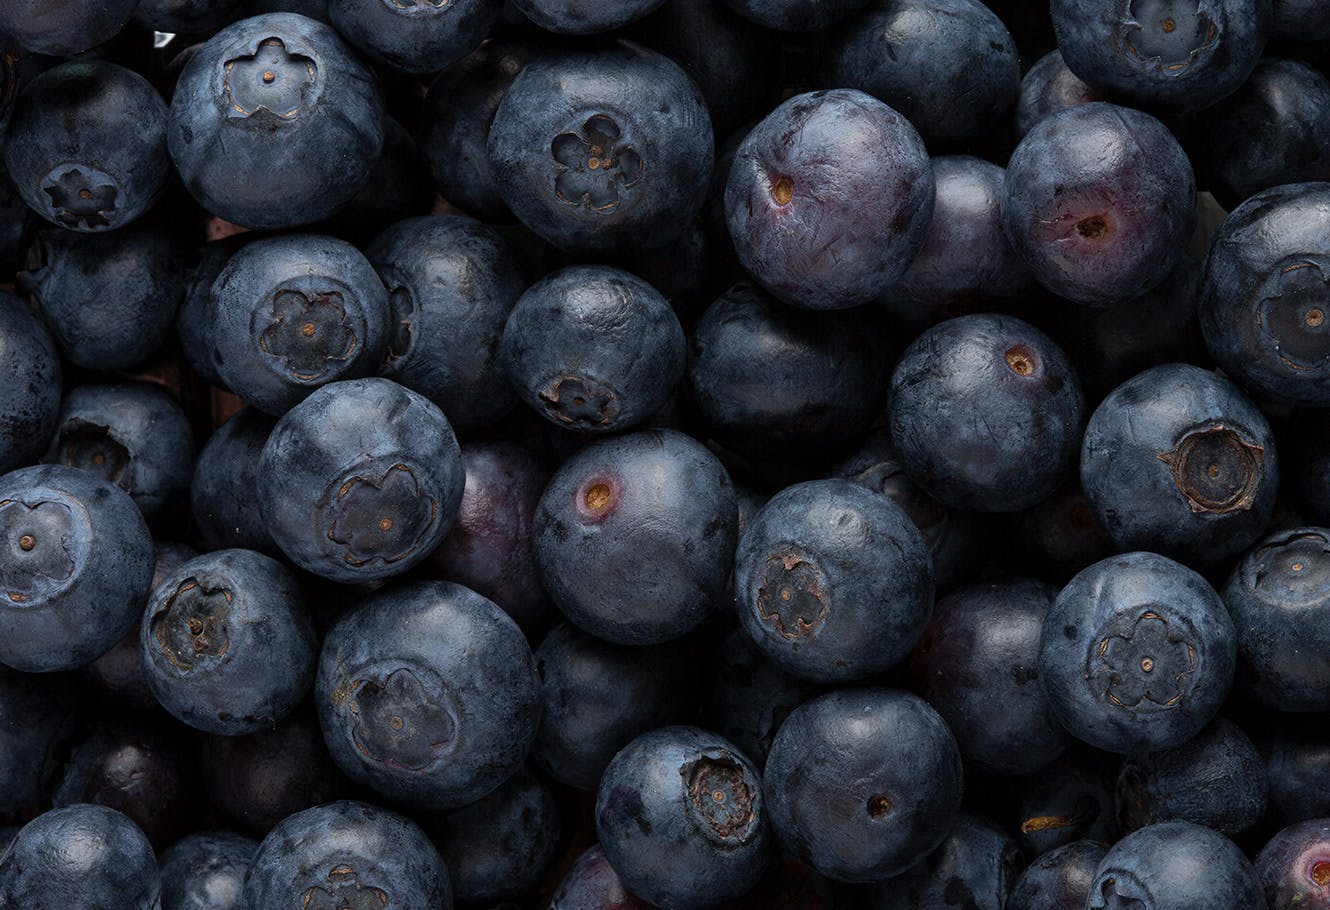 Blueberries in bulk.